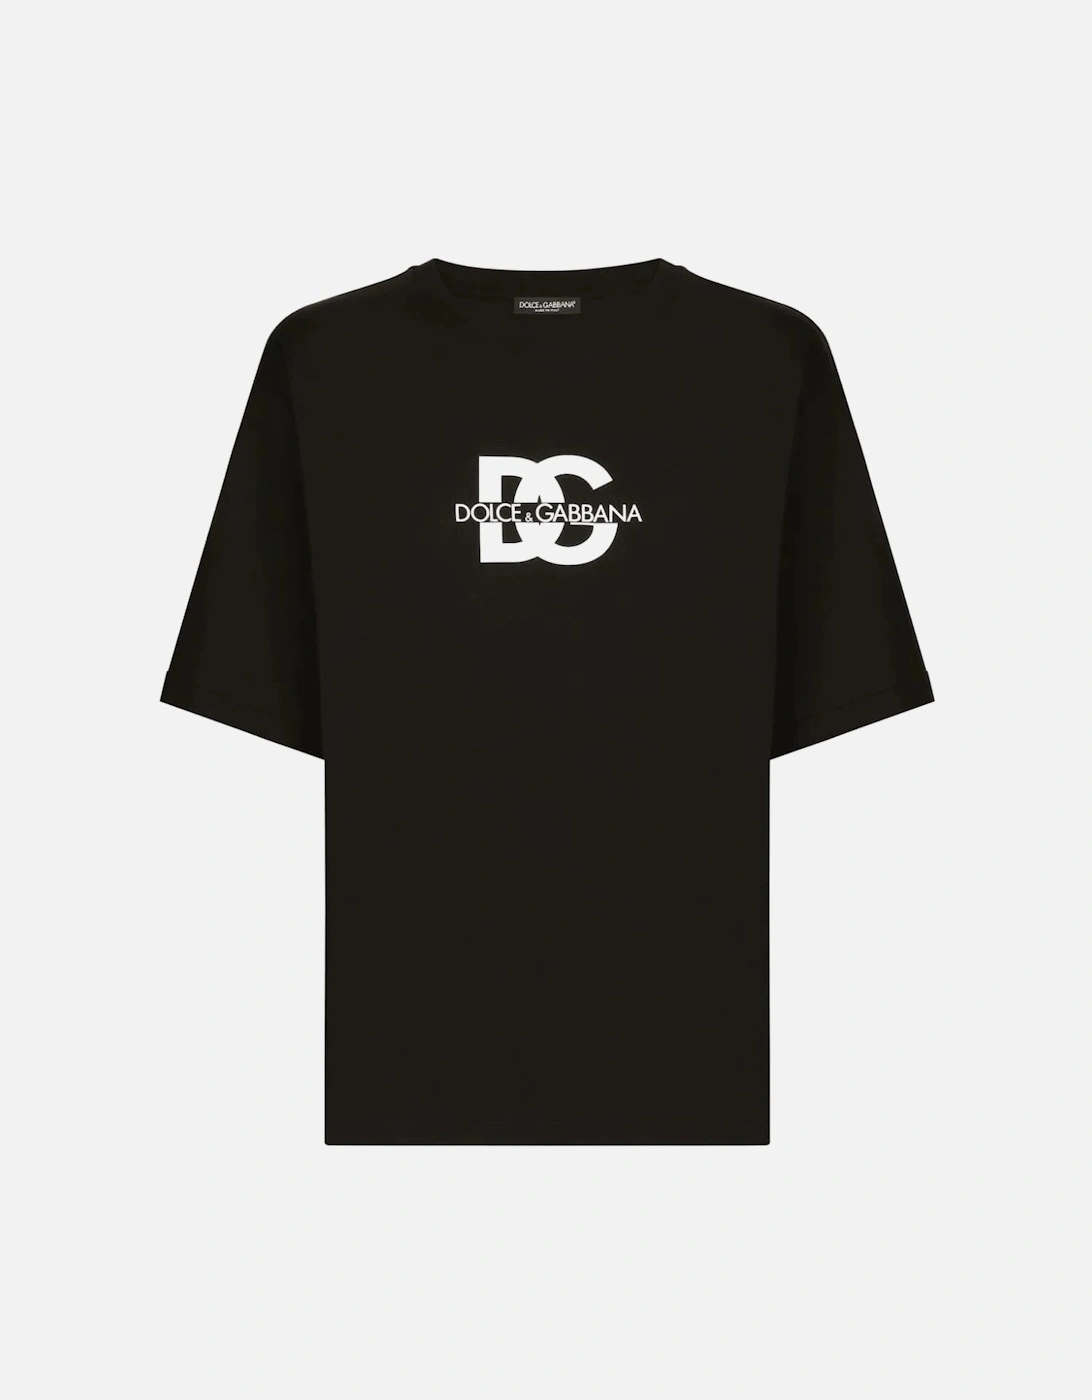 DG Overfit Cotton T-shirt Black, 6 of 5